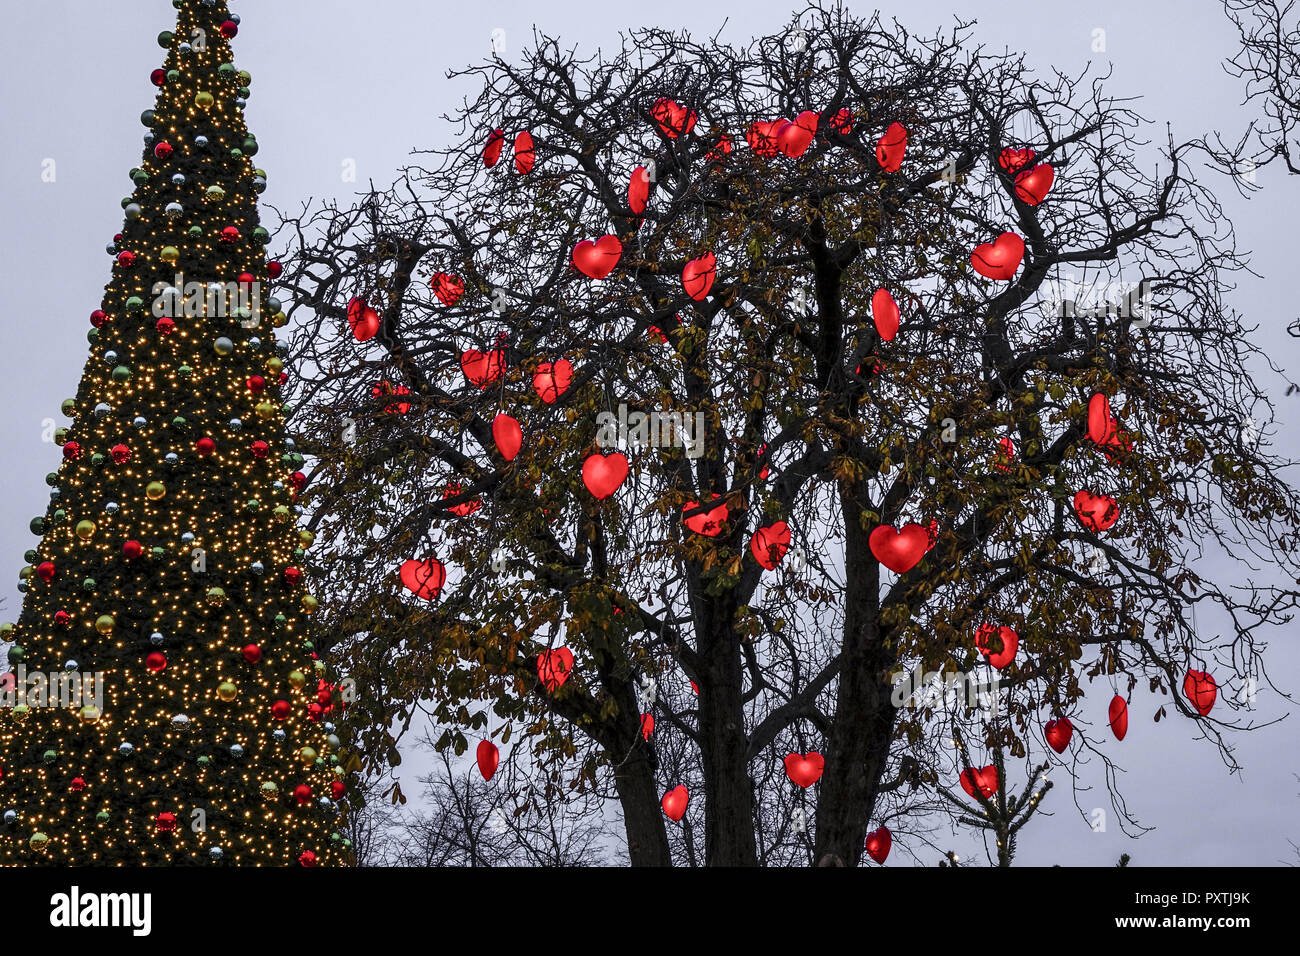 Baum mit rot leuchtenden Herzen, Weihnachtsdekoration, im Vergnügungspark Tivoli, Innenstadt, Kopenhagen, Region Hovedstaden, Dänemark, Europa, Tree w Stock Photo